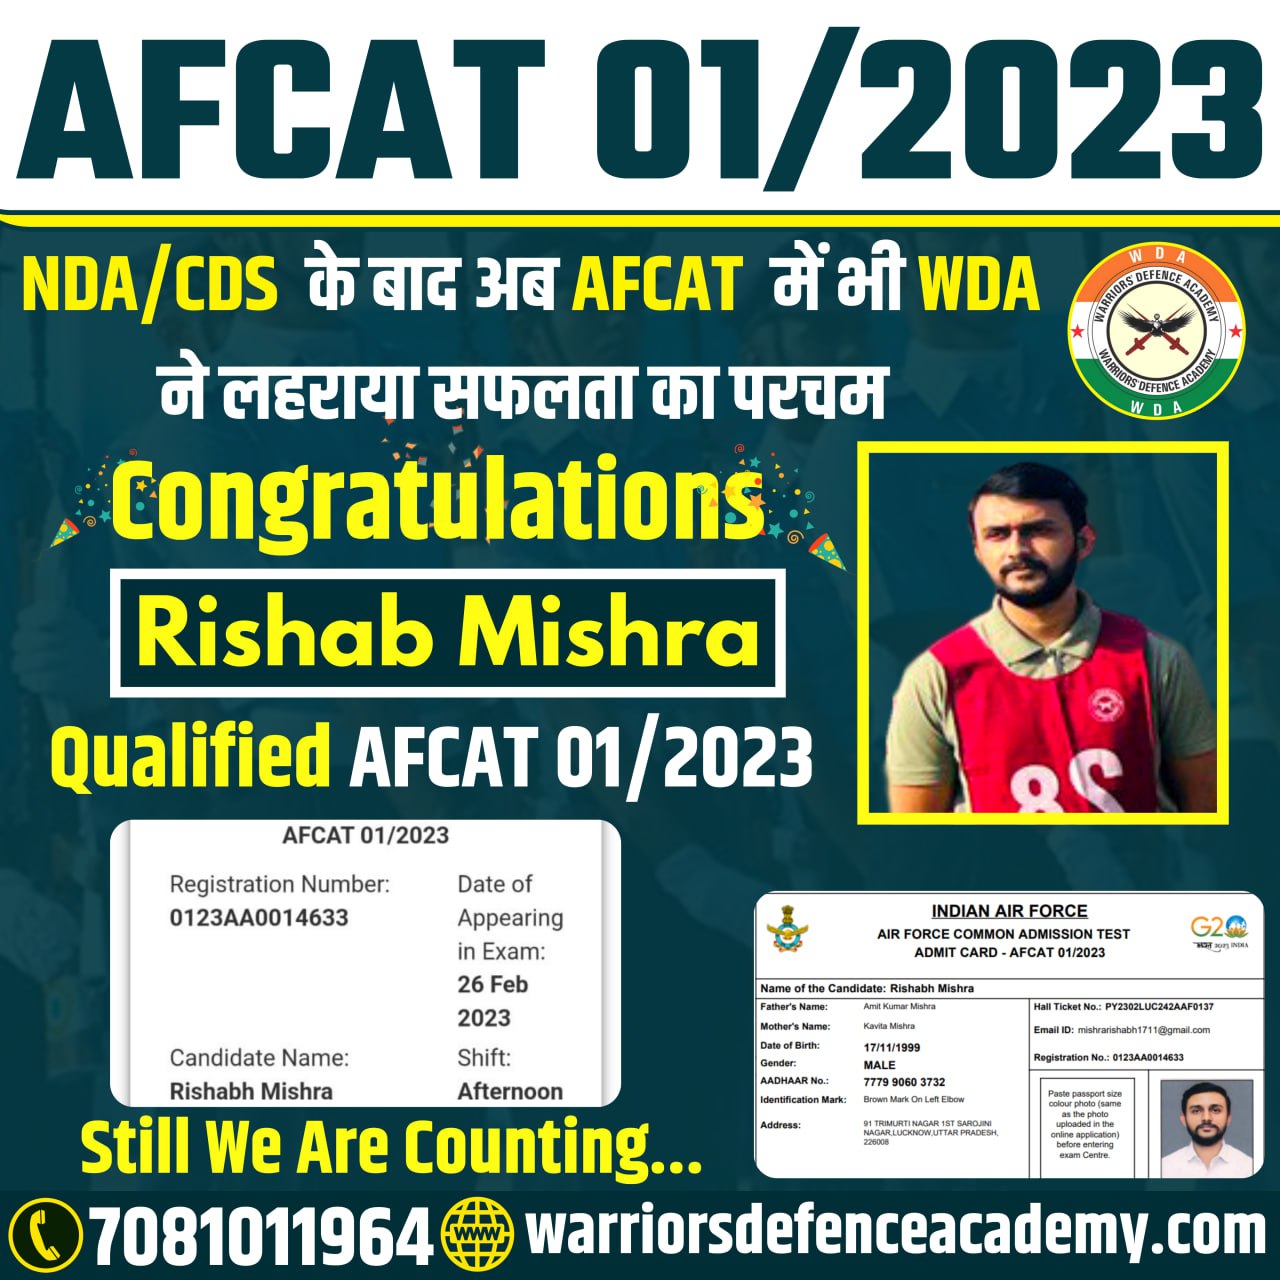 No-1 NDA Coaching in Lucknow | Best NDA Coaching in Lucknow | Warriors Defence Academy Best NDA Coaching in Lucknow